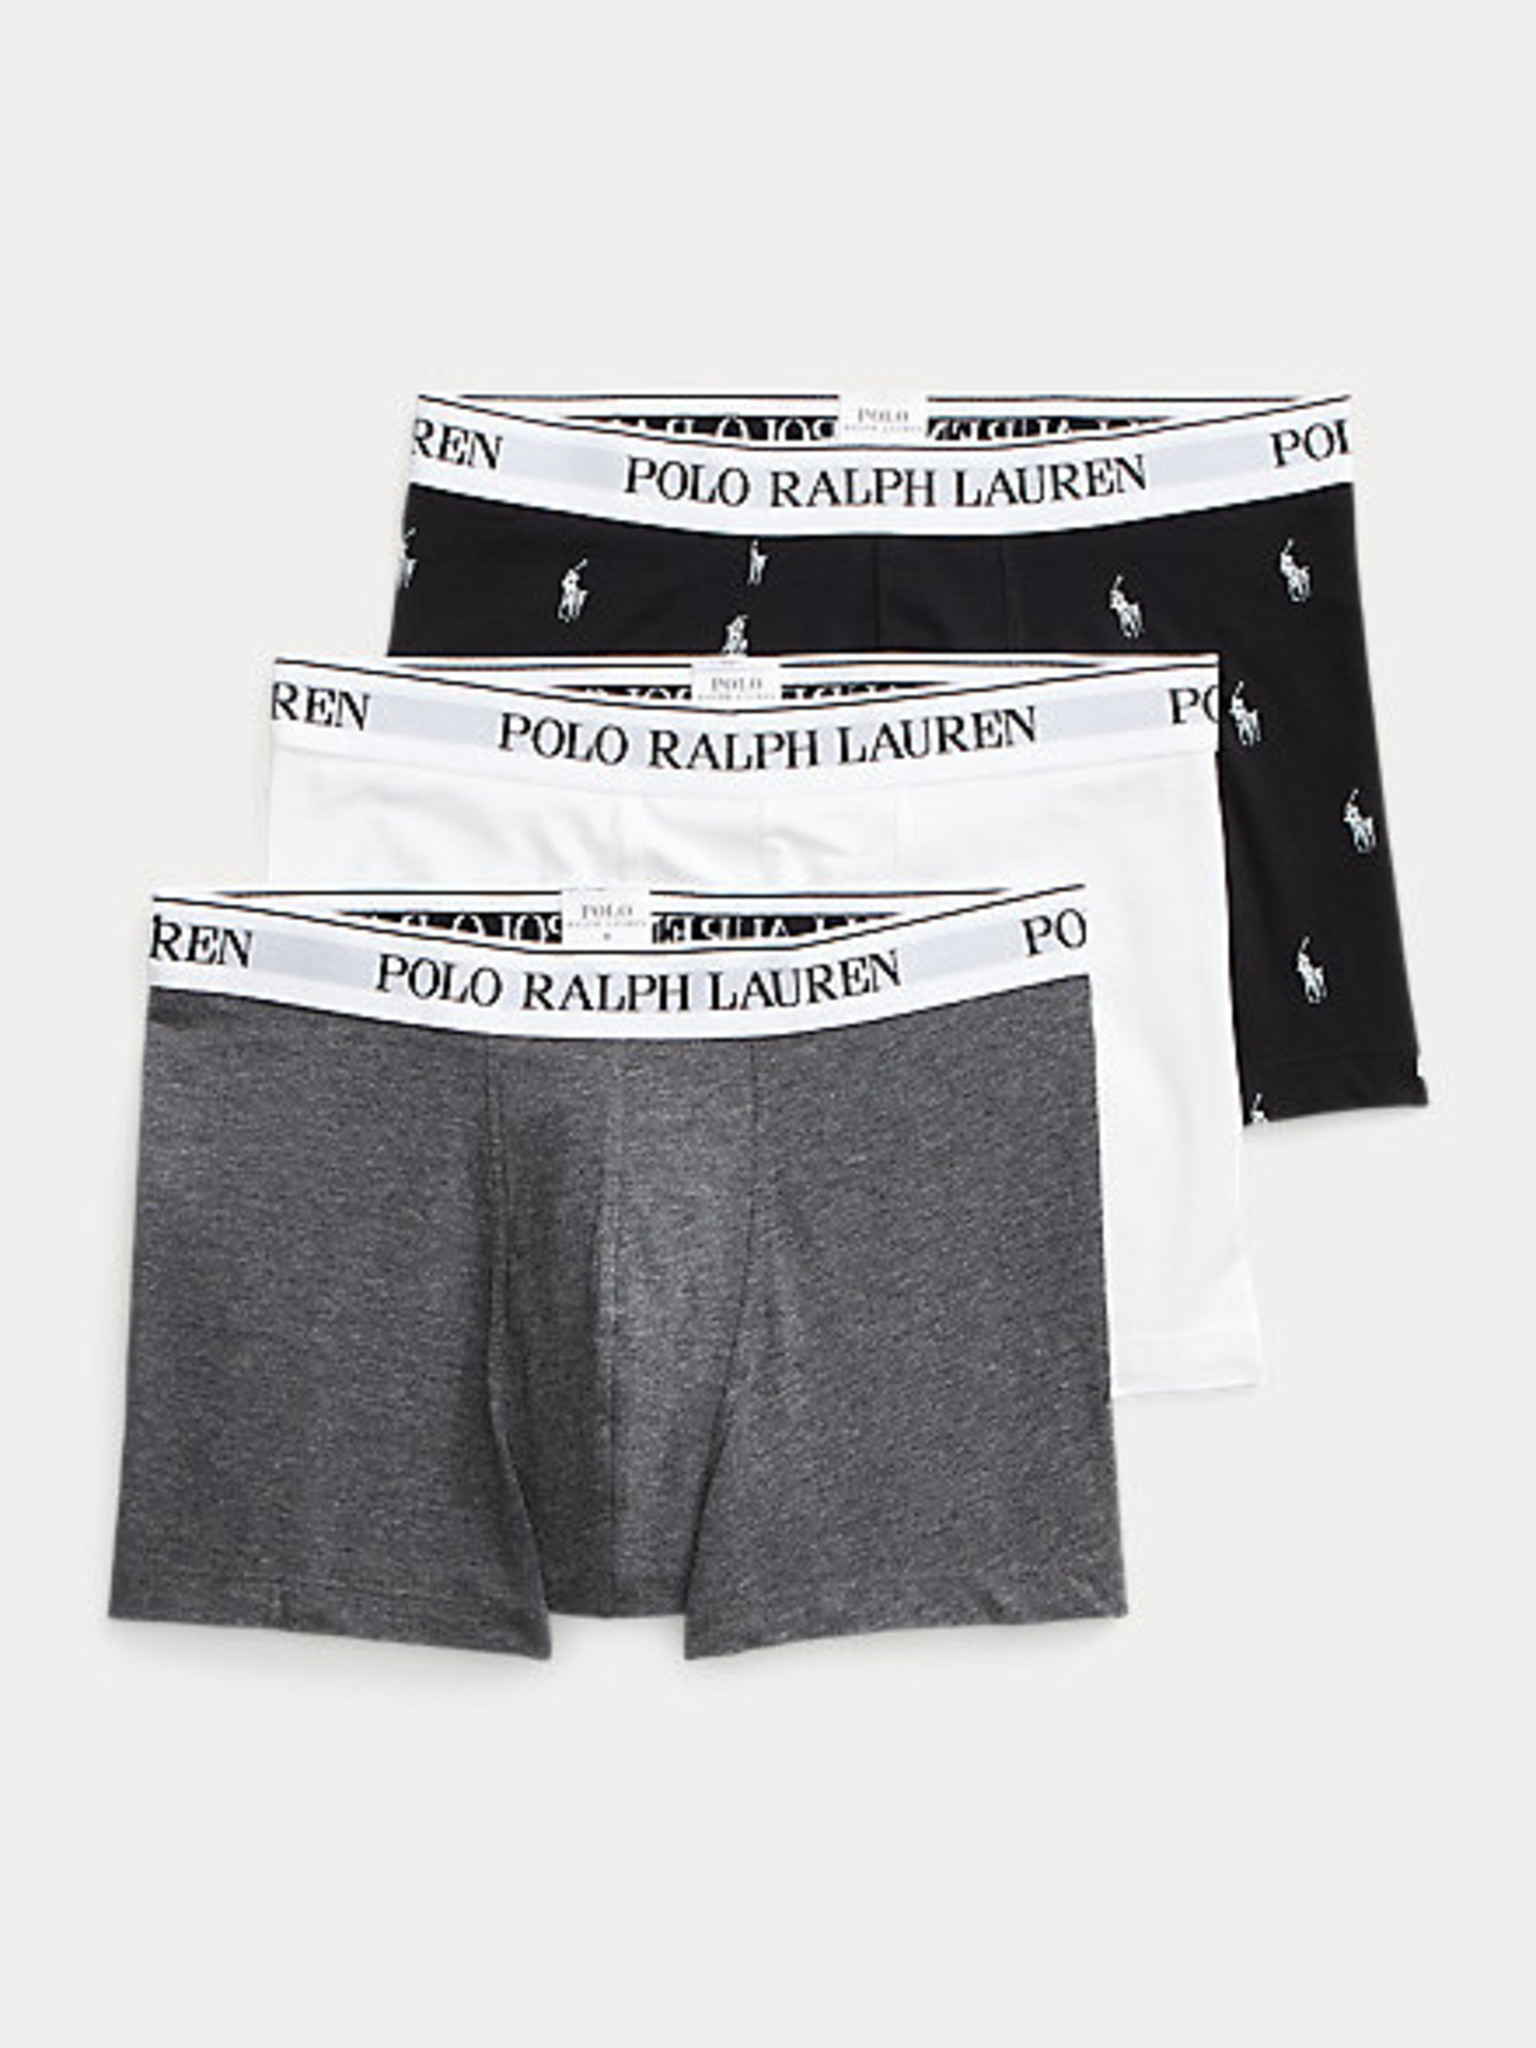 POLO RALPH LAUREN 3-Pack Boxers Trunk Boxer Shorts Underwear Pants Pantie M